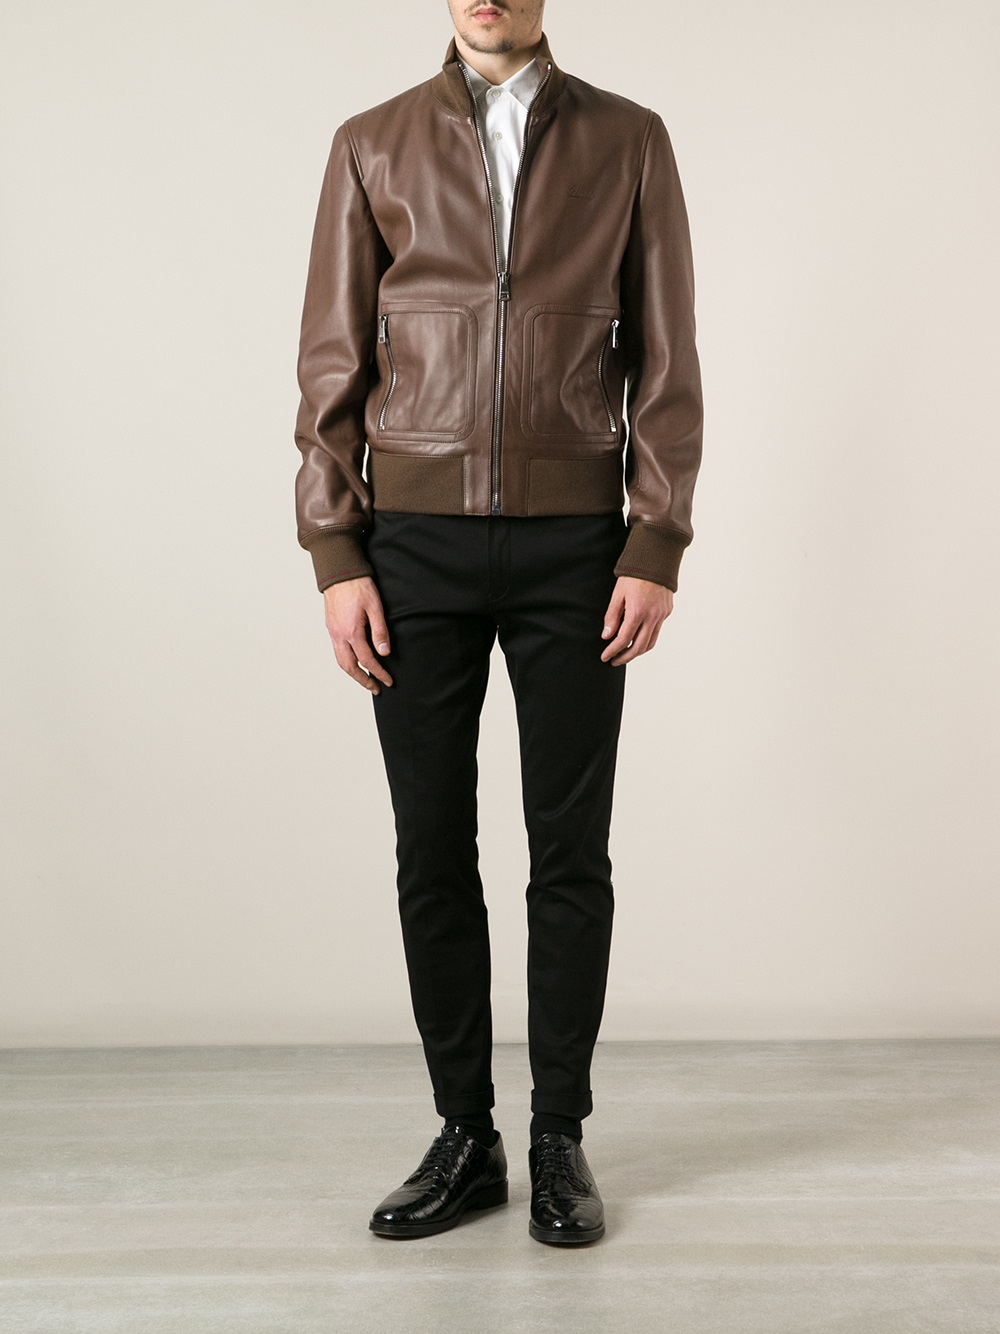 underskud Asser Bevæger sig ikke Gucci Leather Jacket in Brown for Men | Lyst